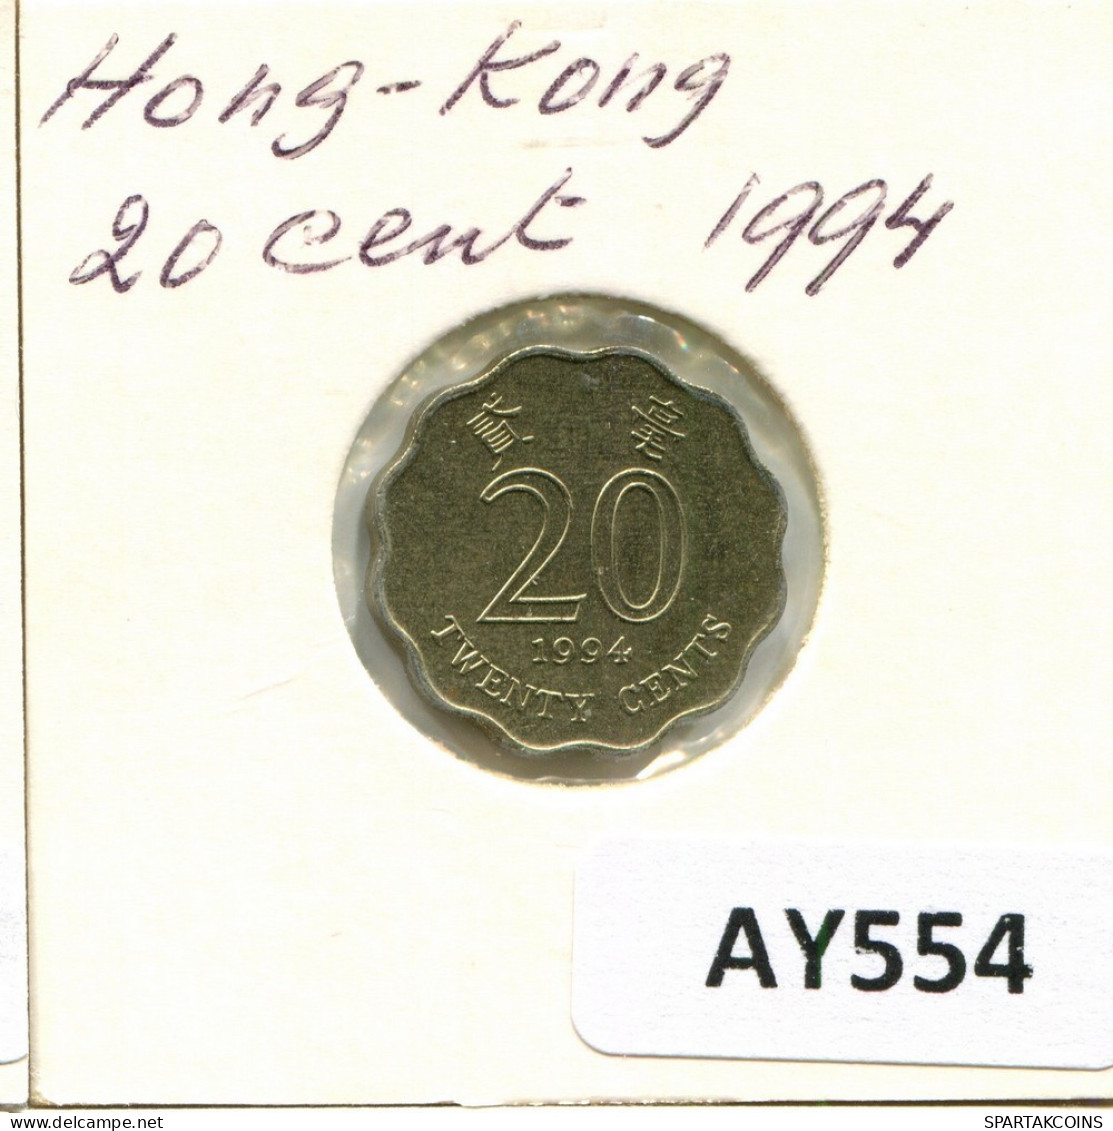 20 CENTS 1994 HONGKONG HONG KONG Münze #AY554.D.A - Hongkong